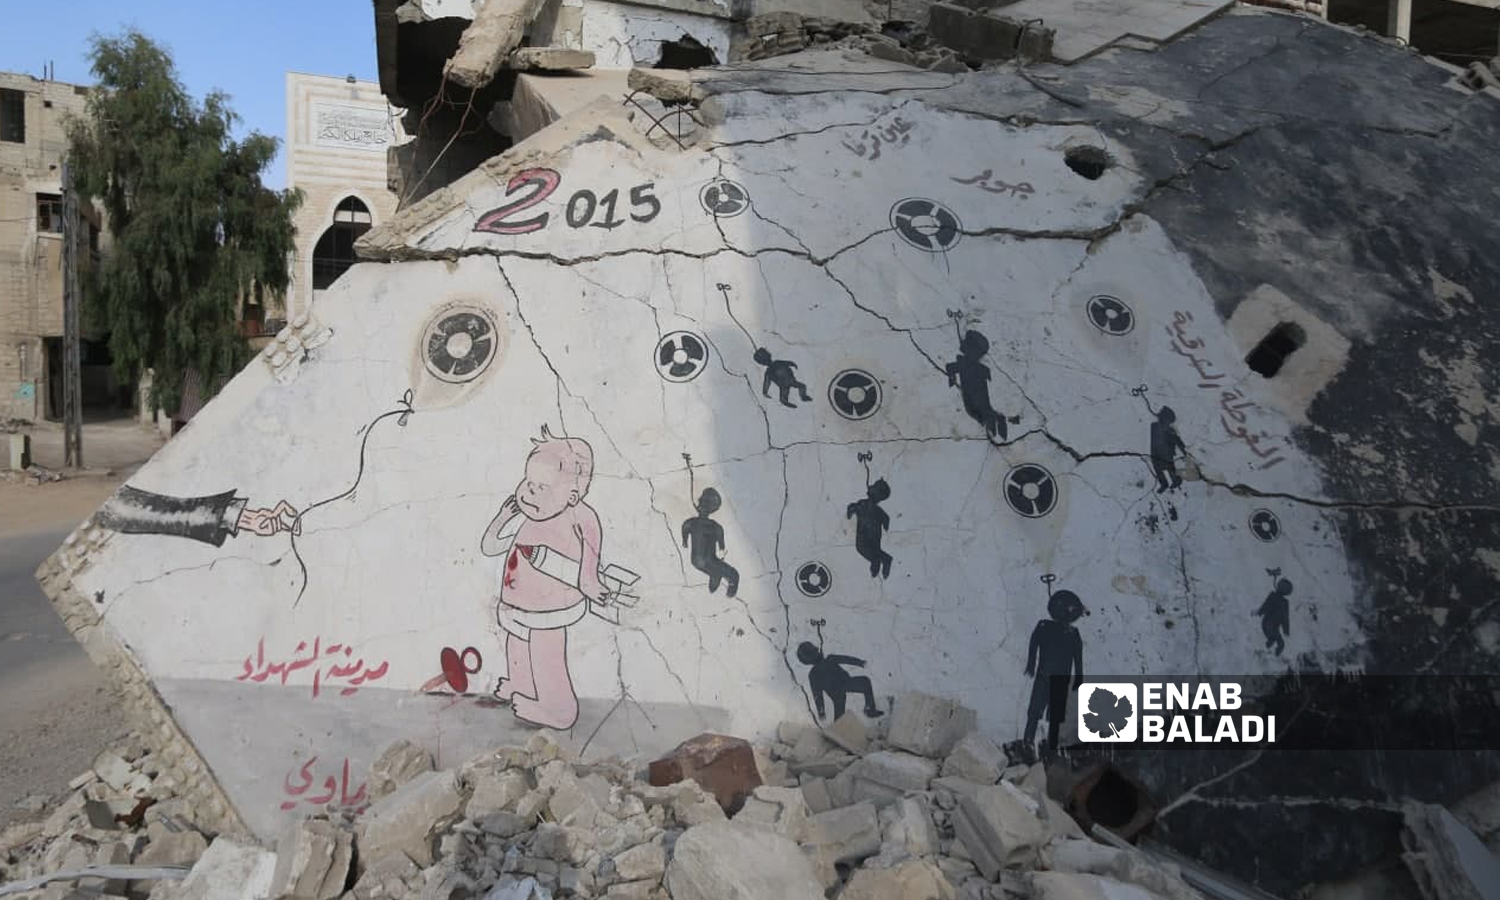 جرافيتي يجسد ذكرى مجزرة الكيماوي رسم على جدران بناء مدمر في زملكا- 2016 (يوسف حمص/ عنب بلدي)